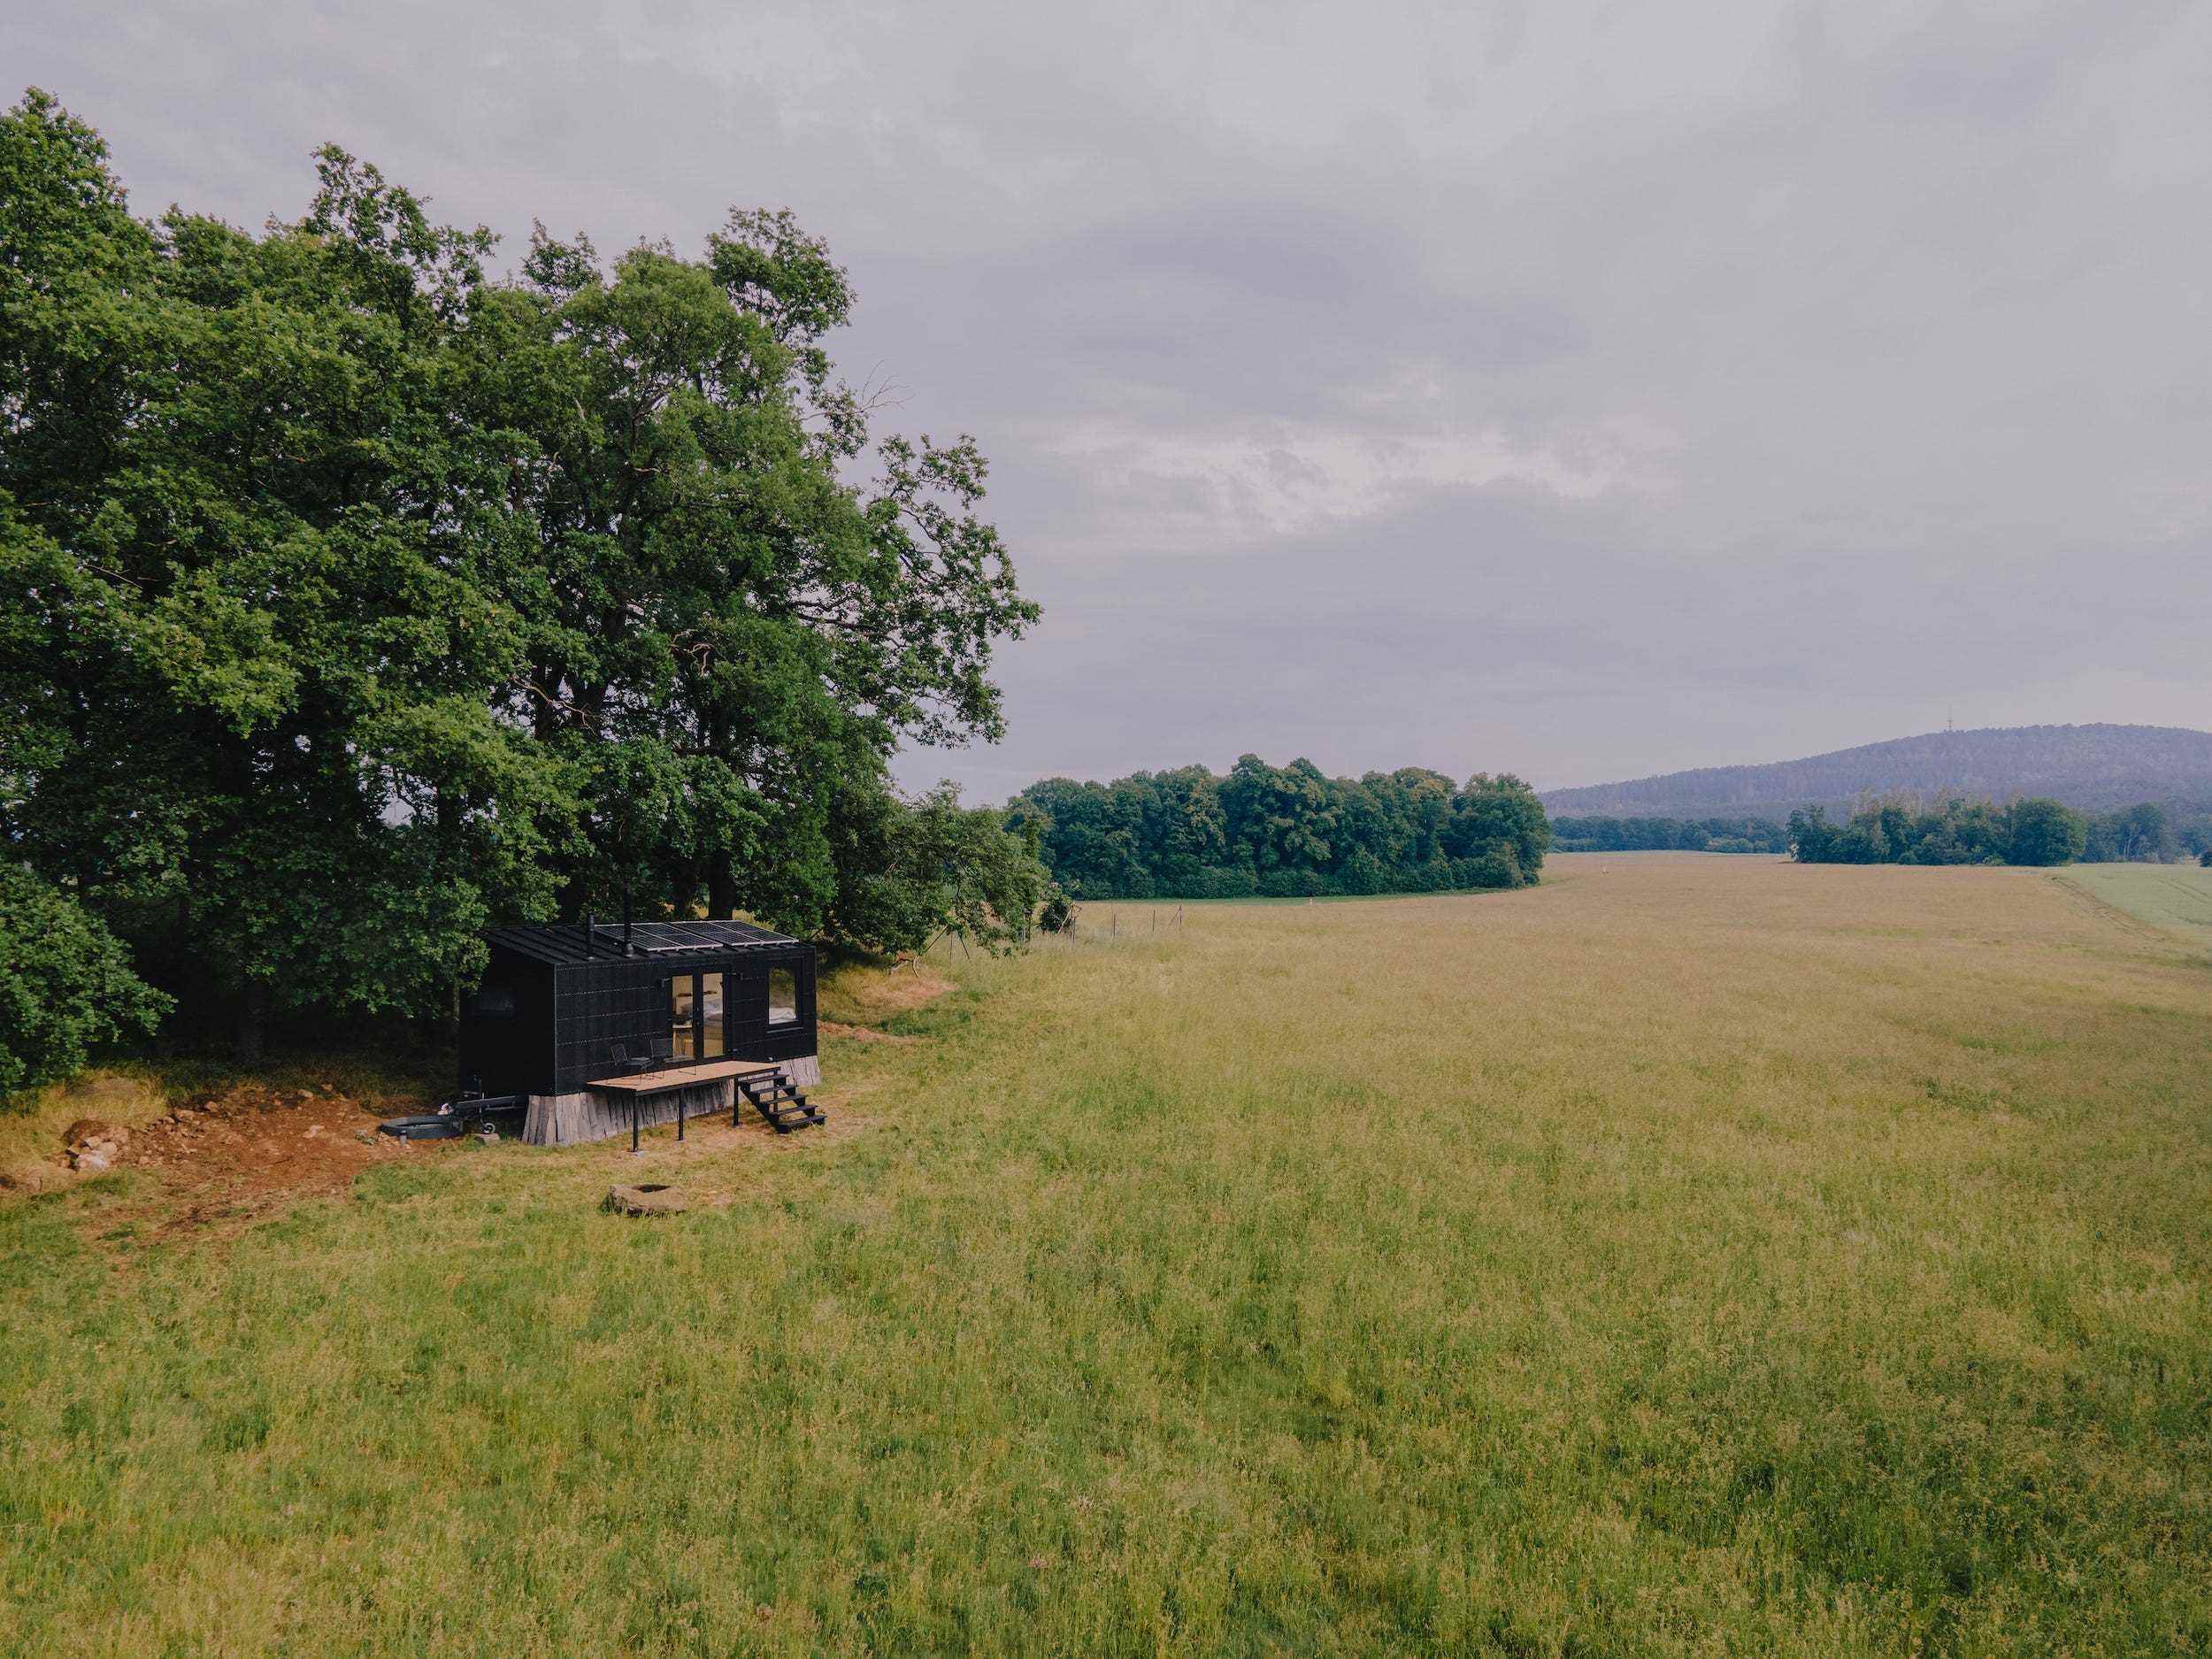 Eine Raus-Hütte draußen in der Natur, umgeben von Bäumen und einem offenen Feld